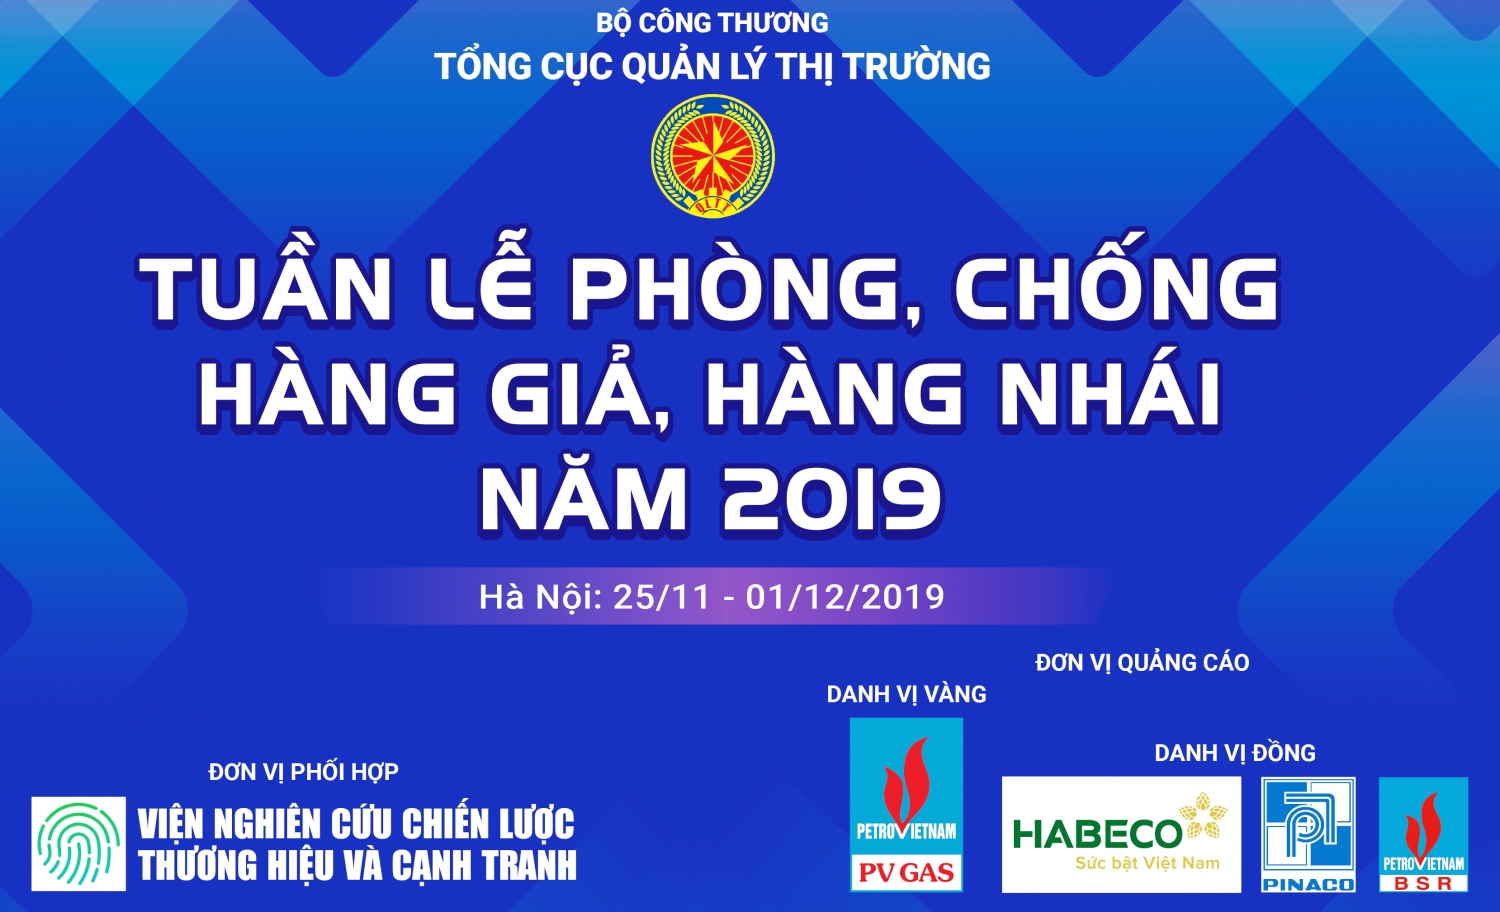 pv gas bsr dong hanh cung tuan le phong chong hang gia hang nhai nam 2019